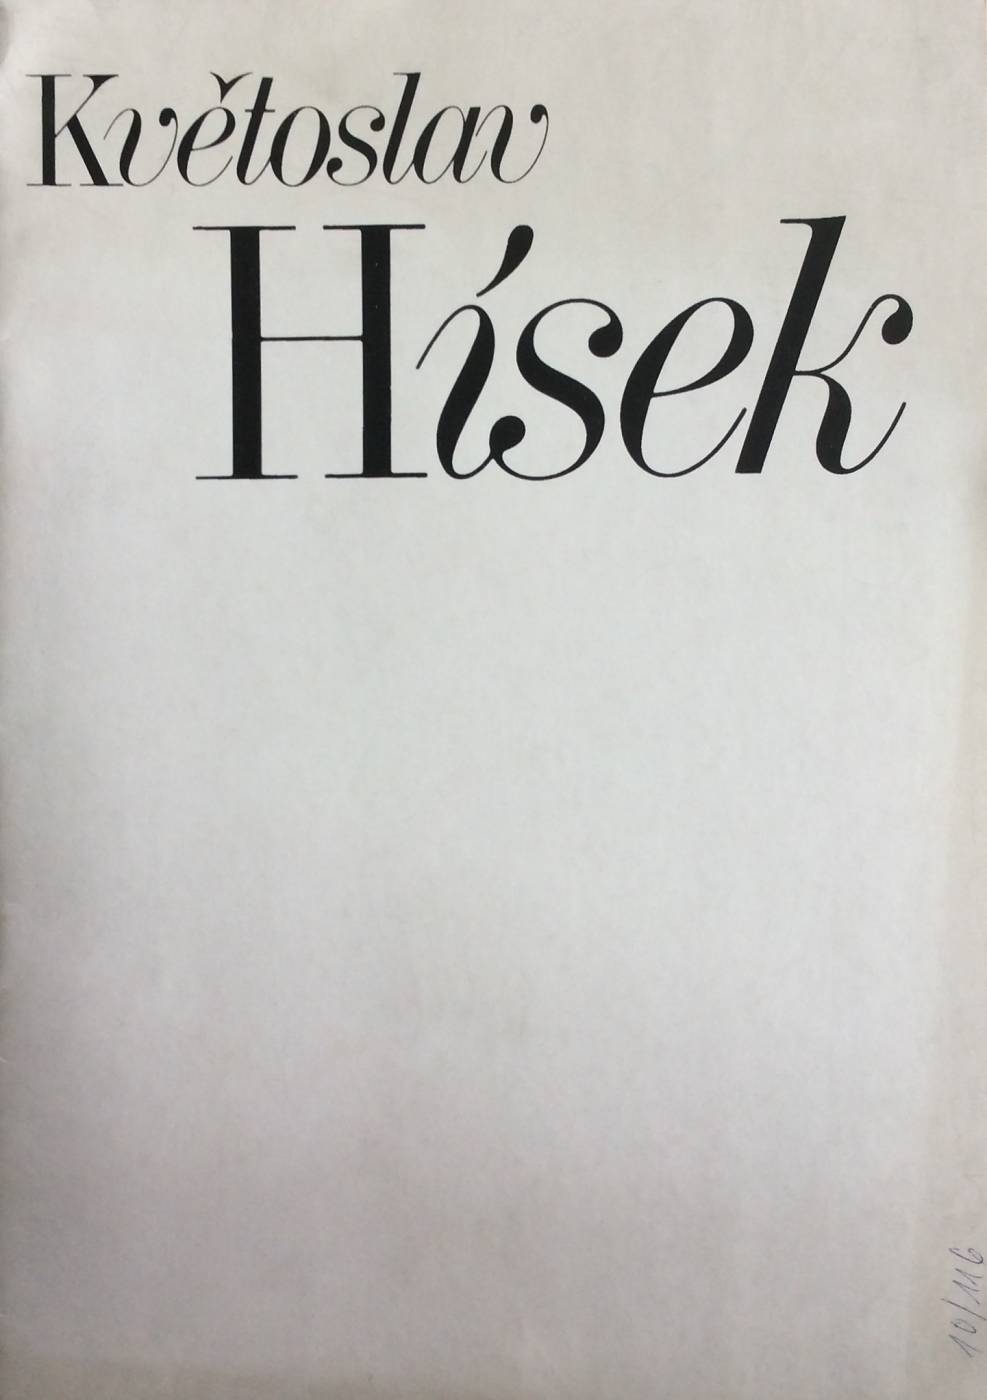 Květoslav Hísek – výběr z díla